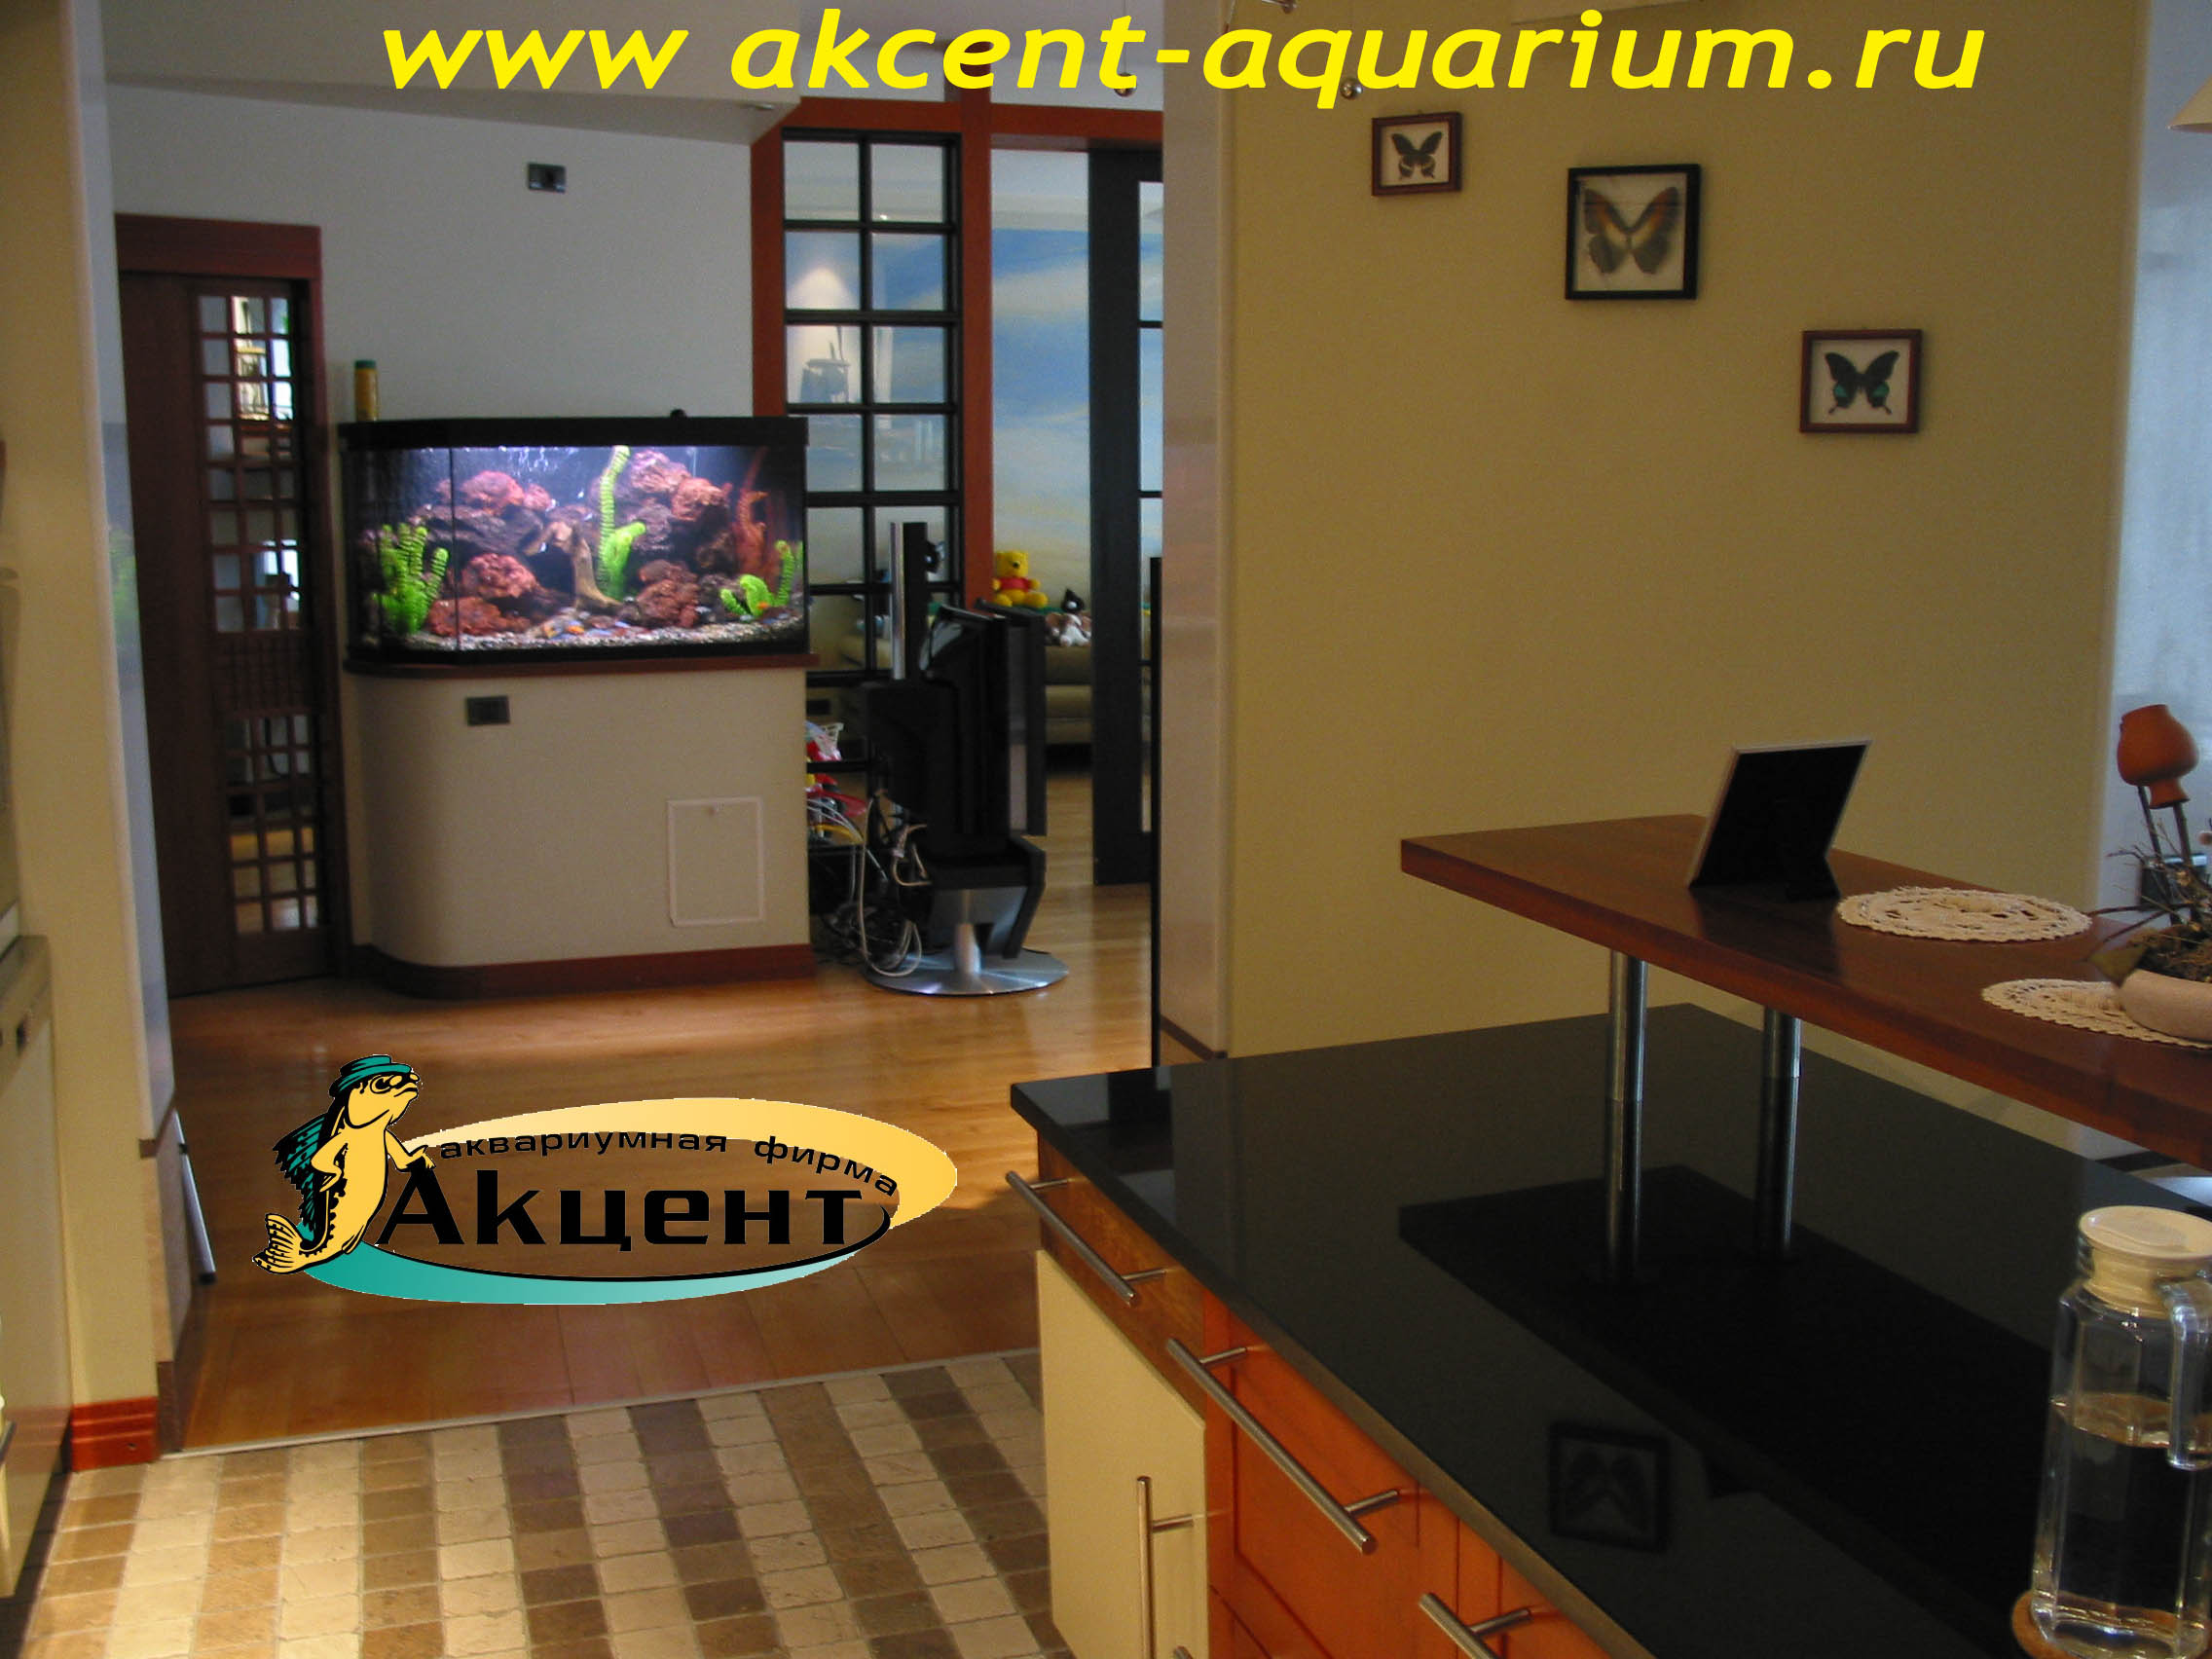 Акцент-Аквариум, аквариум просмотровый 400 литров, вид со стороны кухни